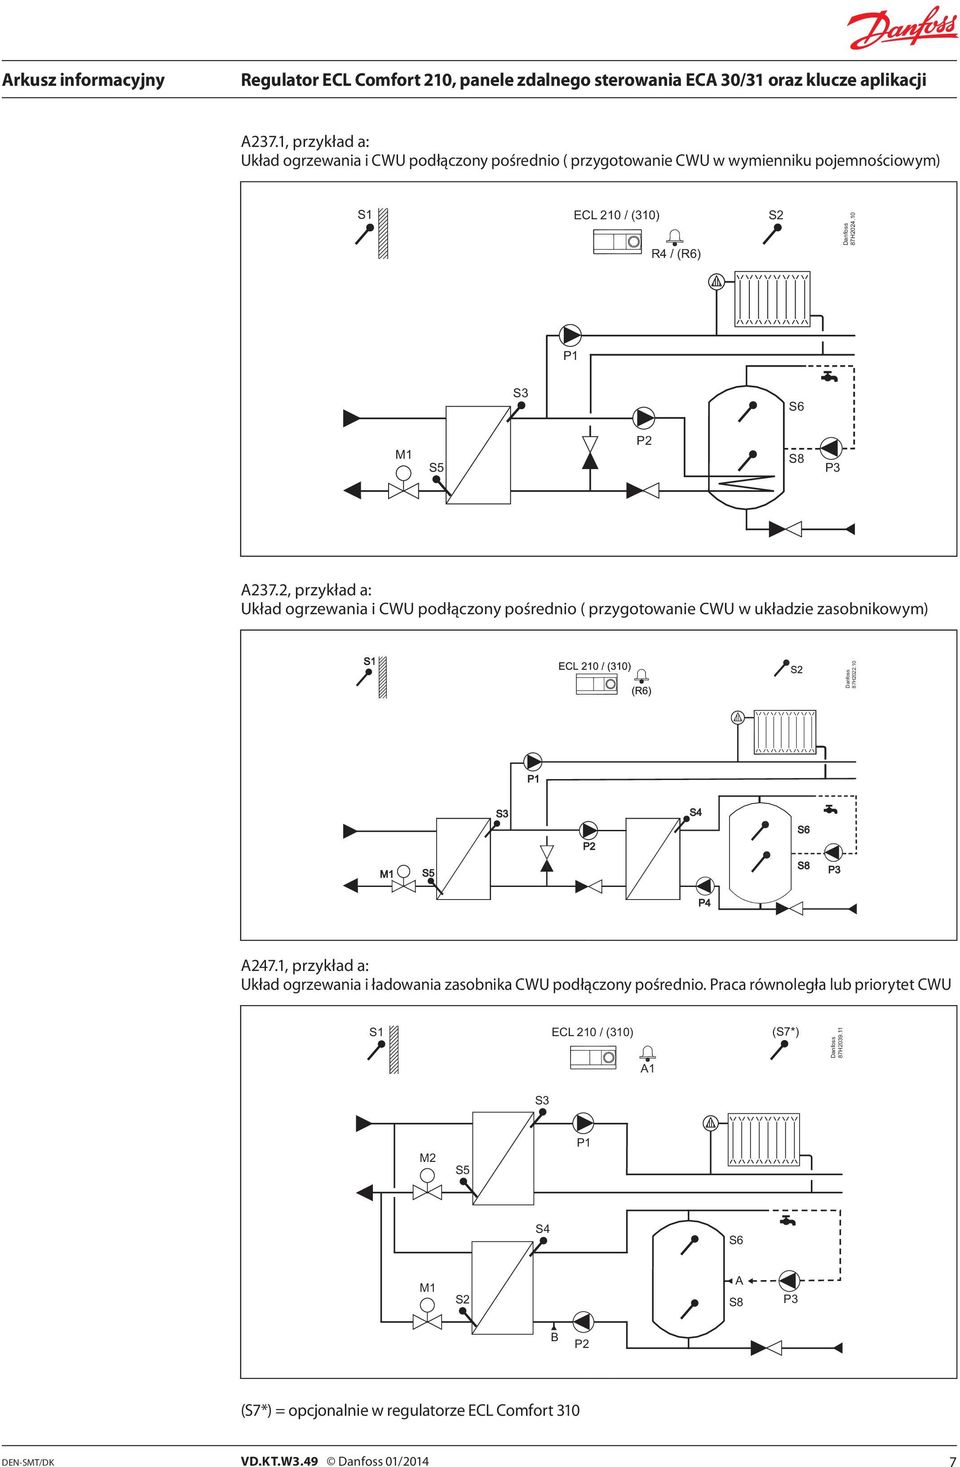 10 P1 S4 S6 P2 M1 P3 P4 A247.1, przykład a: Układ ogrzewania i ładowania zasobnika CWU podłączony pośrednio.